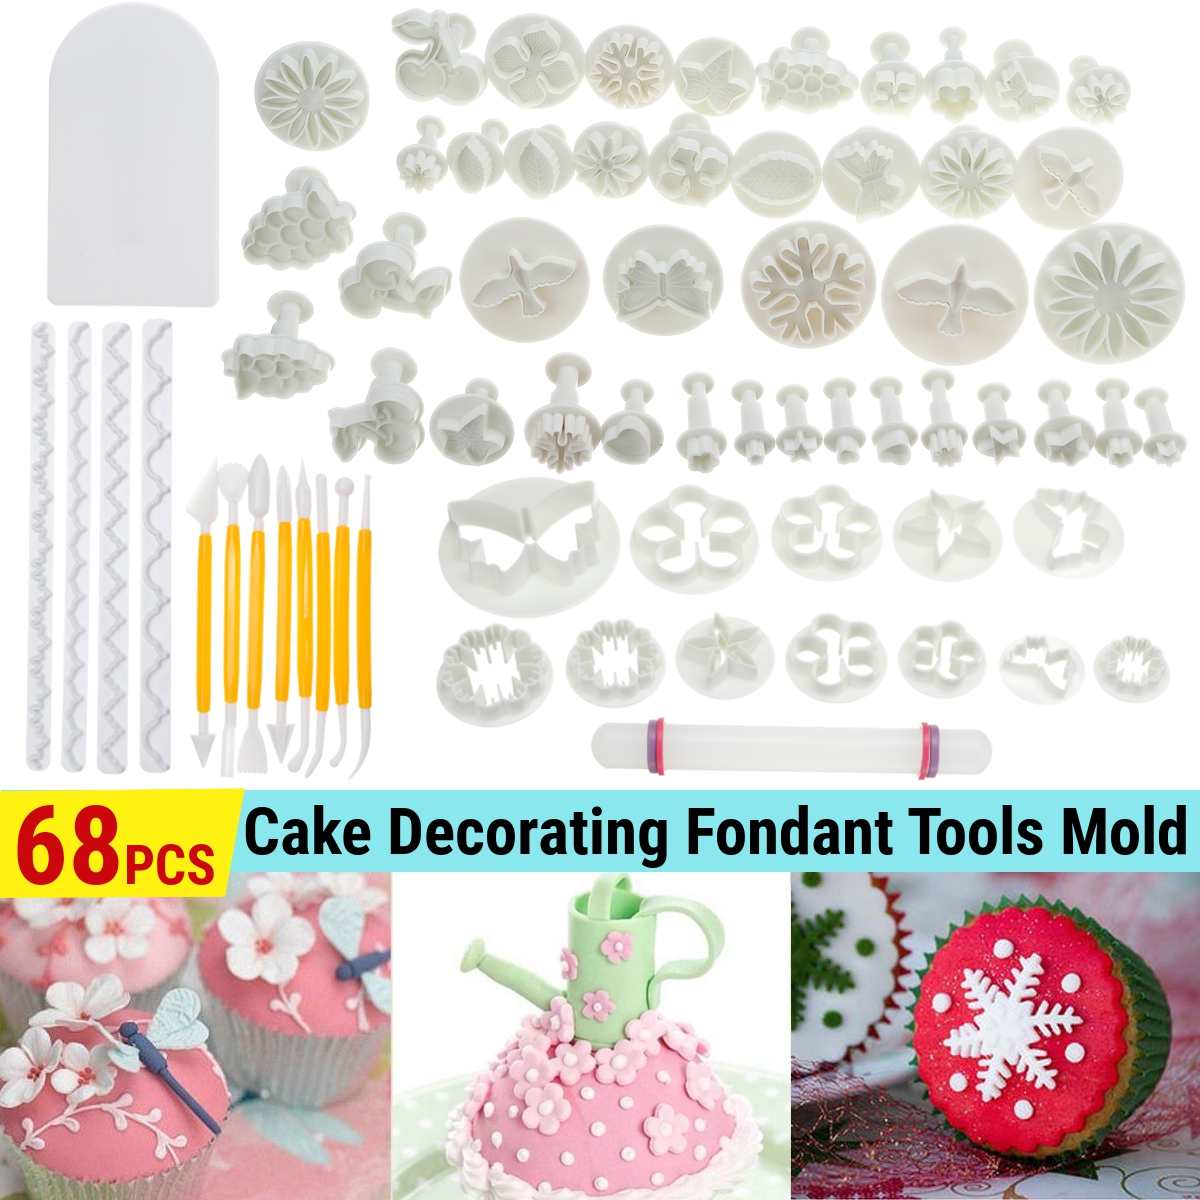 68Pcs Fondant Cakevorm Set Bloem Taart Decoreren Gereedschappen Keuken Bakken Molding Kit Sugarcraft Maken Mould Voor Cookie